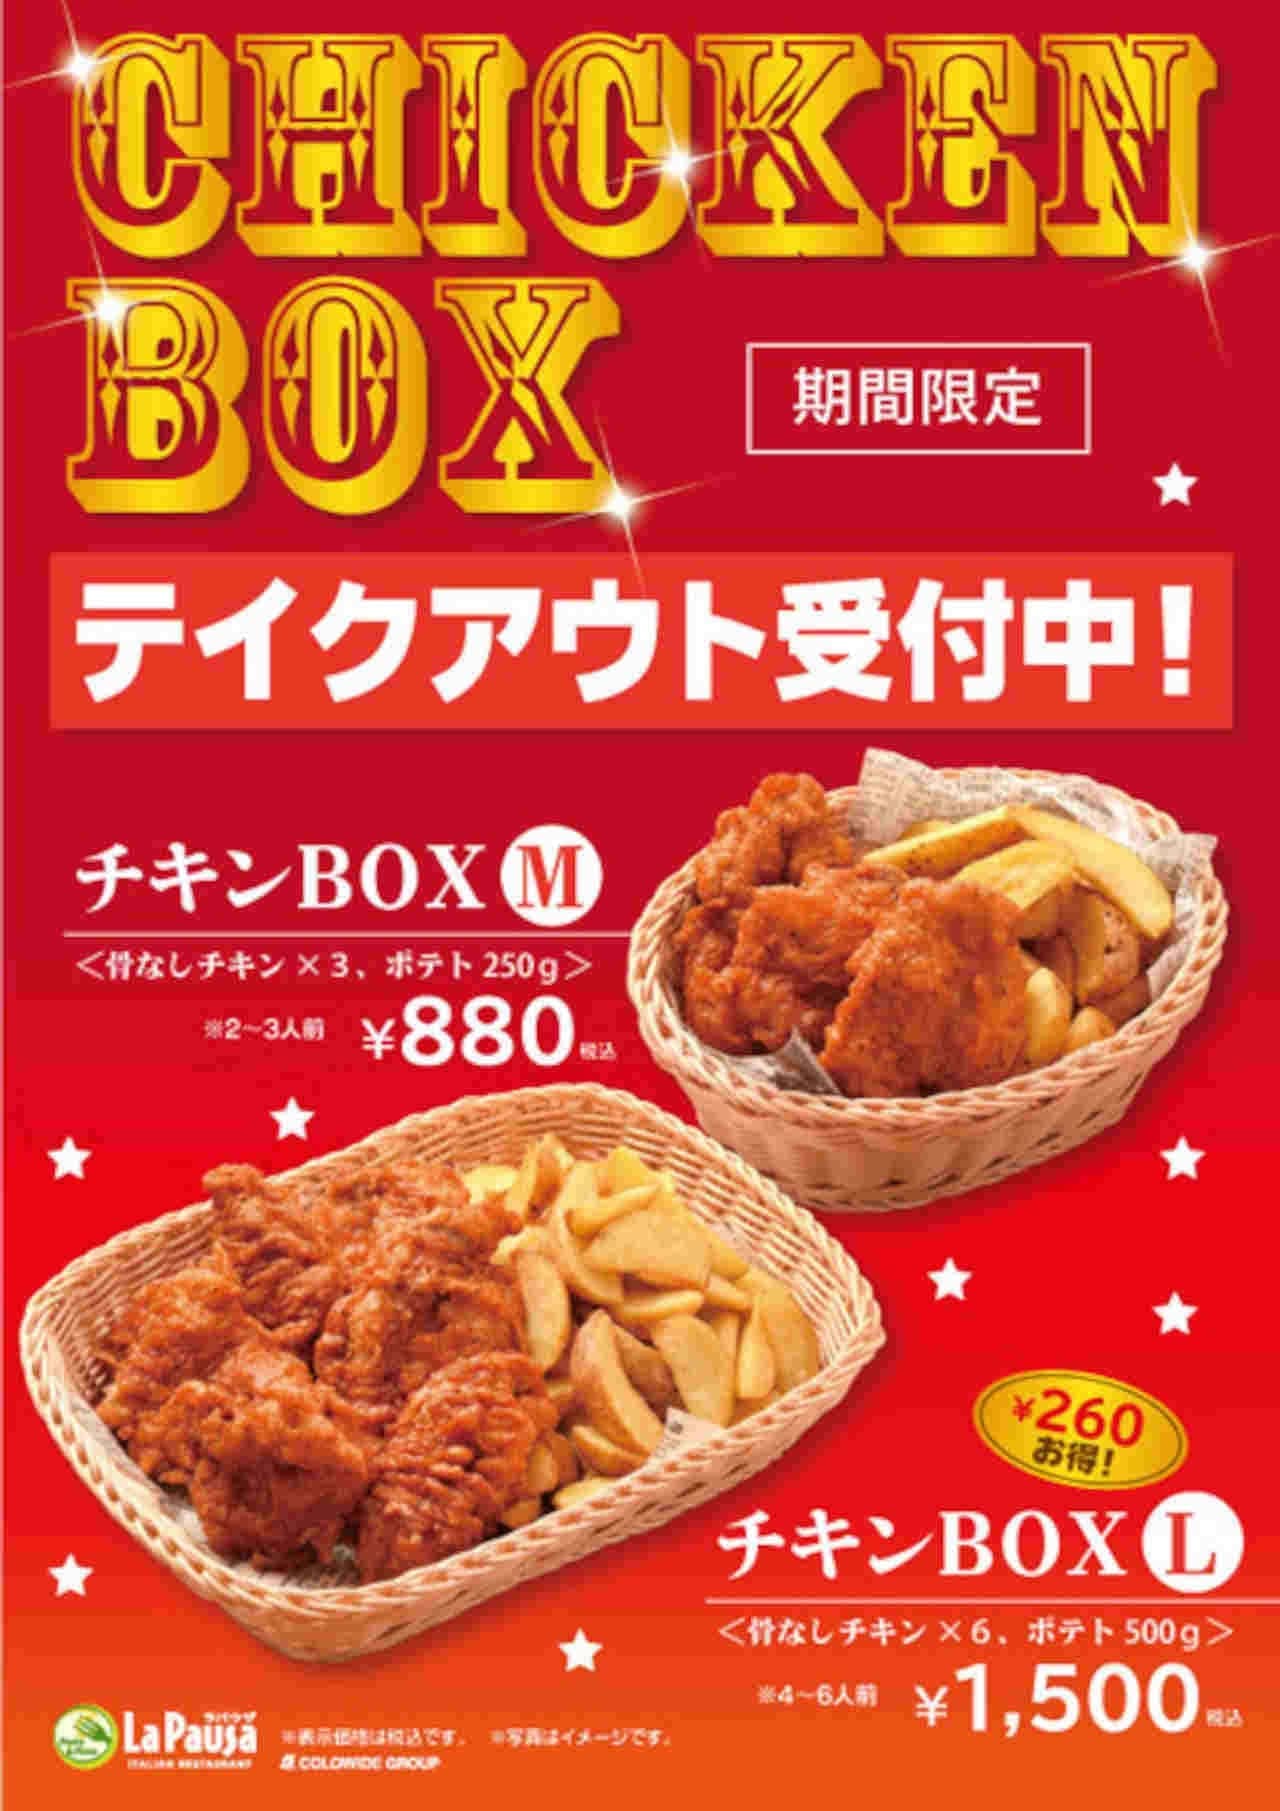 Chicken BOX in Italian "La Pauza"